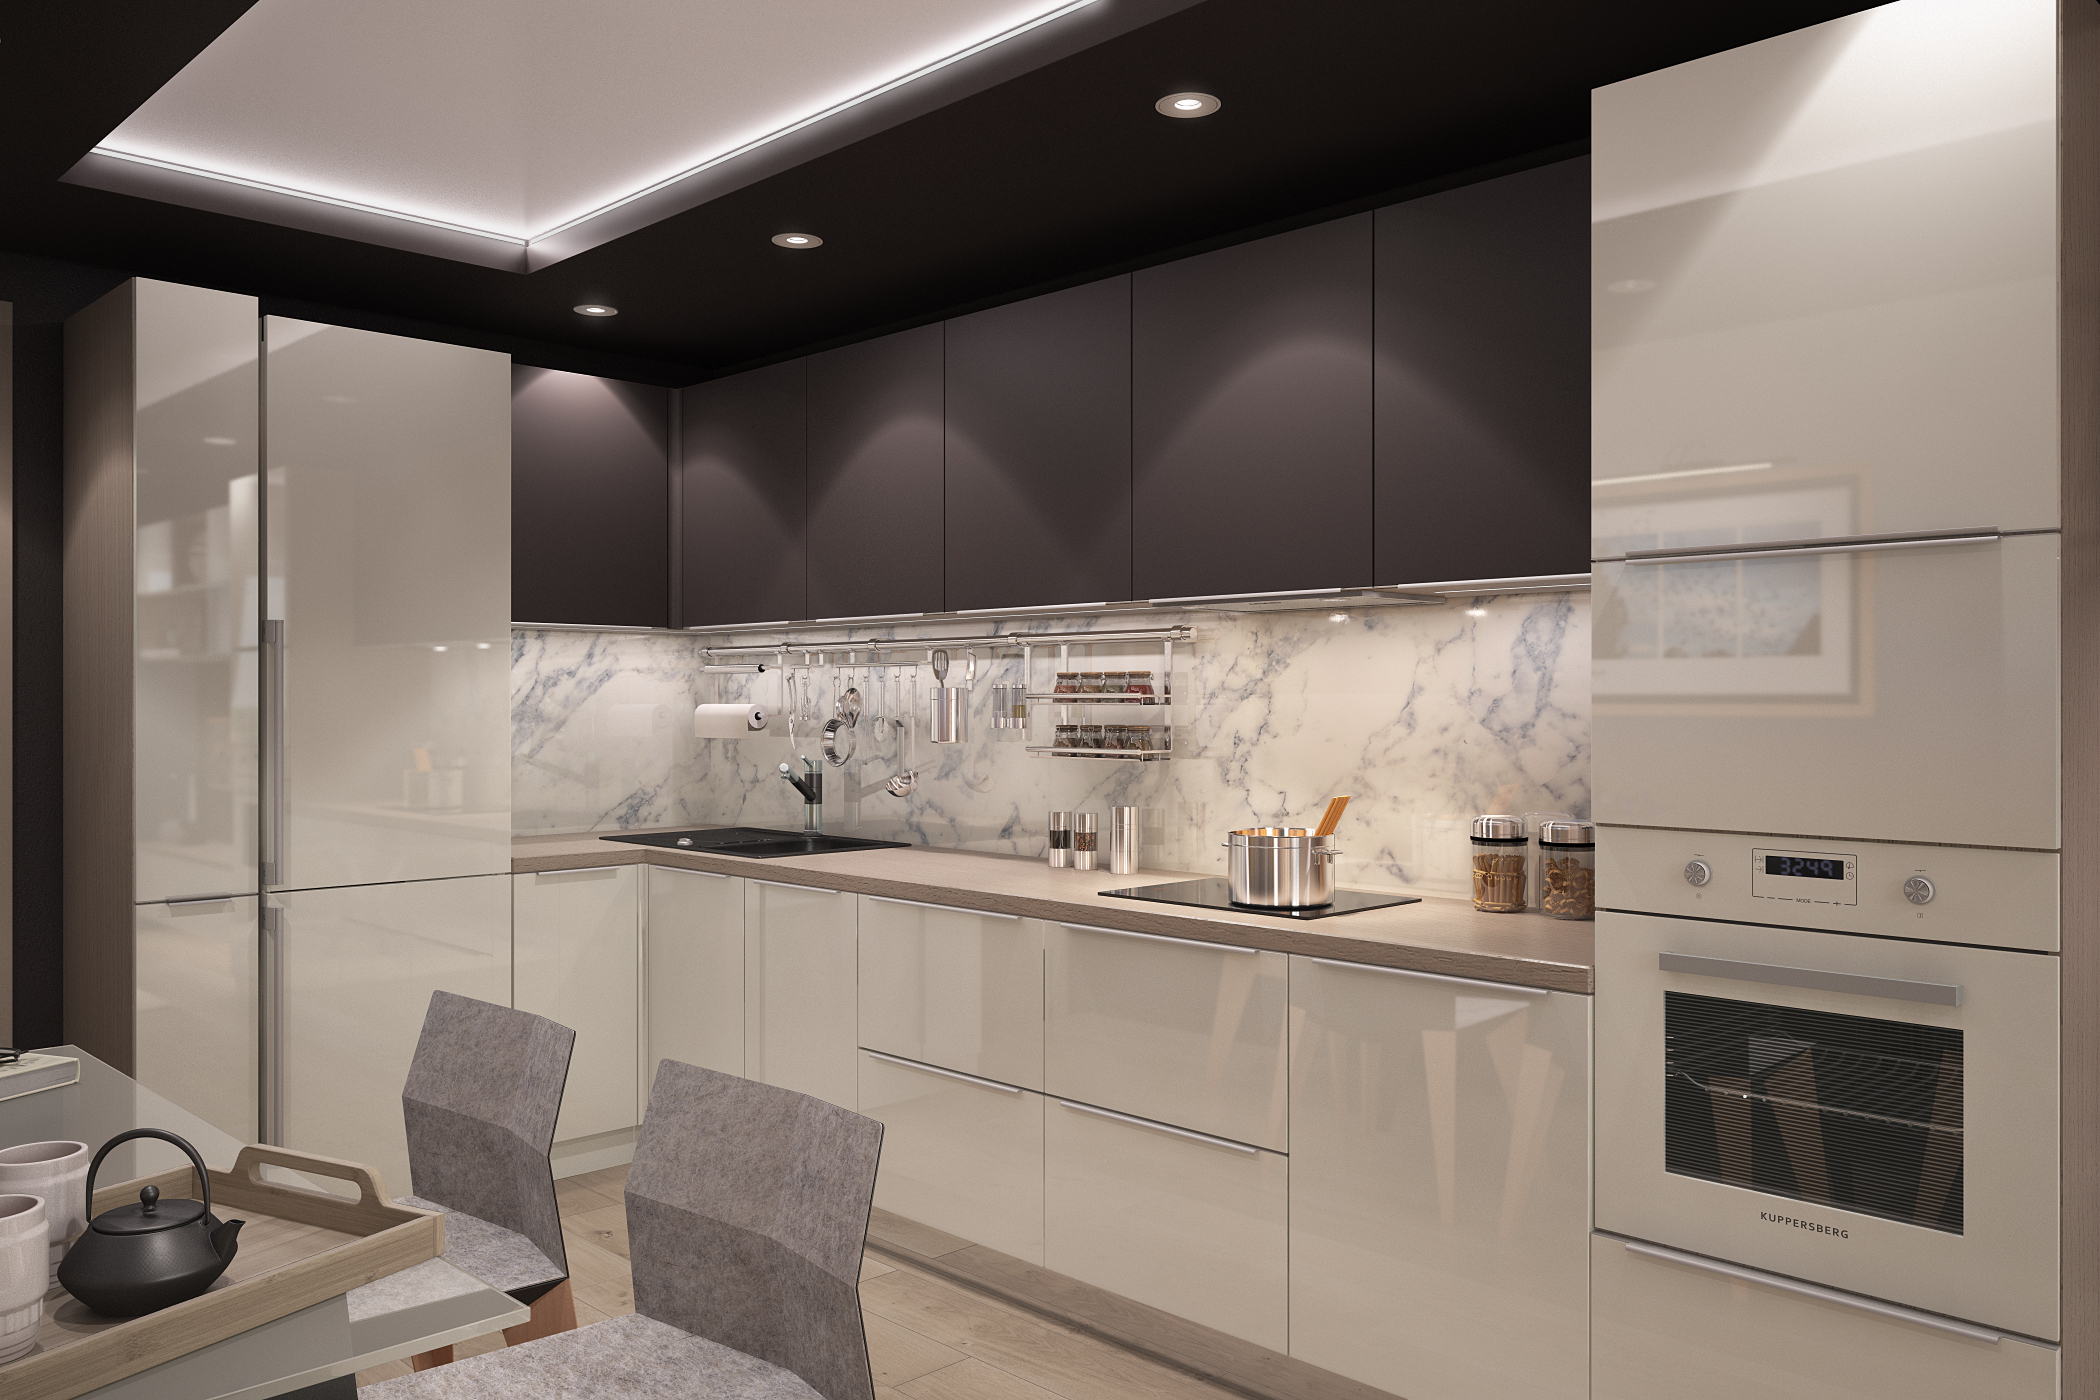 रसोई घर और रहने वाले कमरे 3d max vray 3.0 में प्रस्तुत छवि